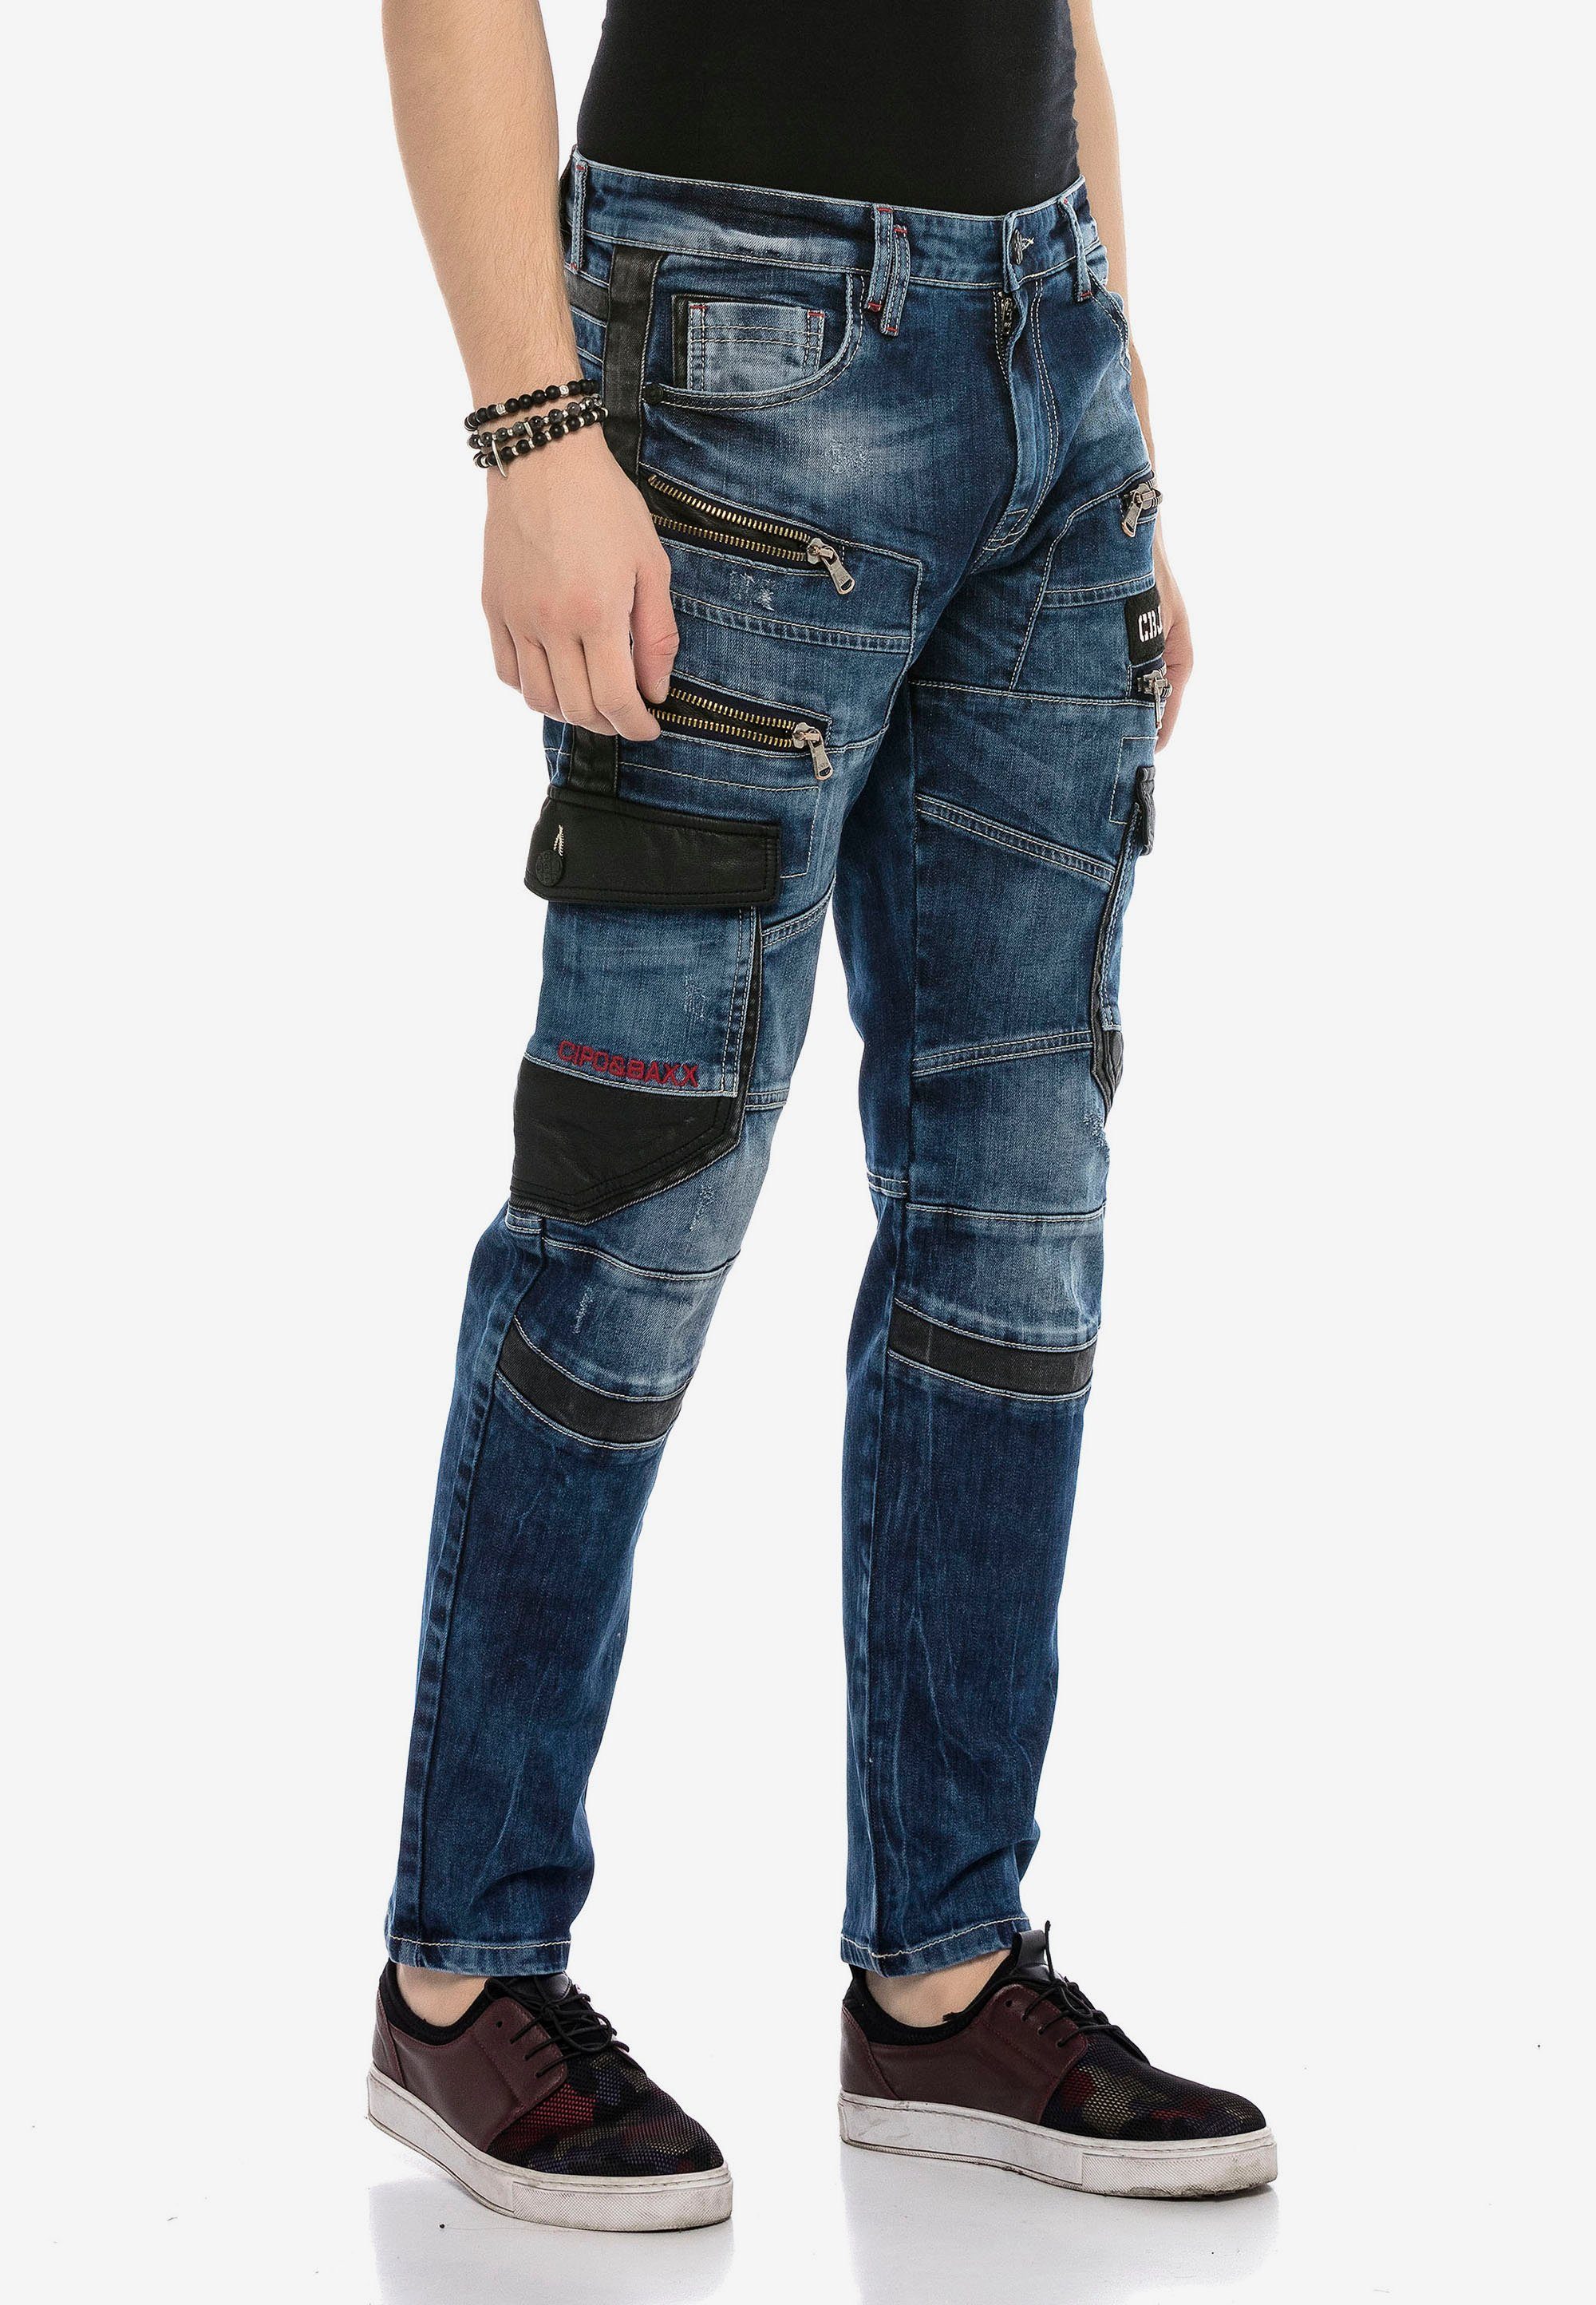 Cipo & Baxx Bequeme Jeans mit auffälligen Applikationen